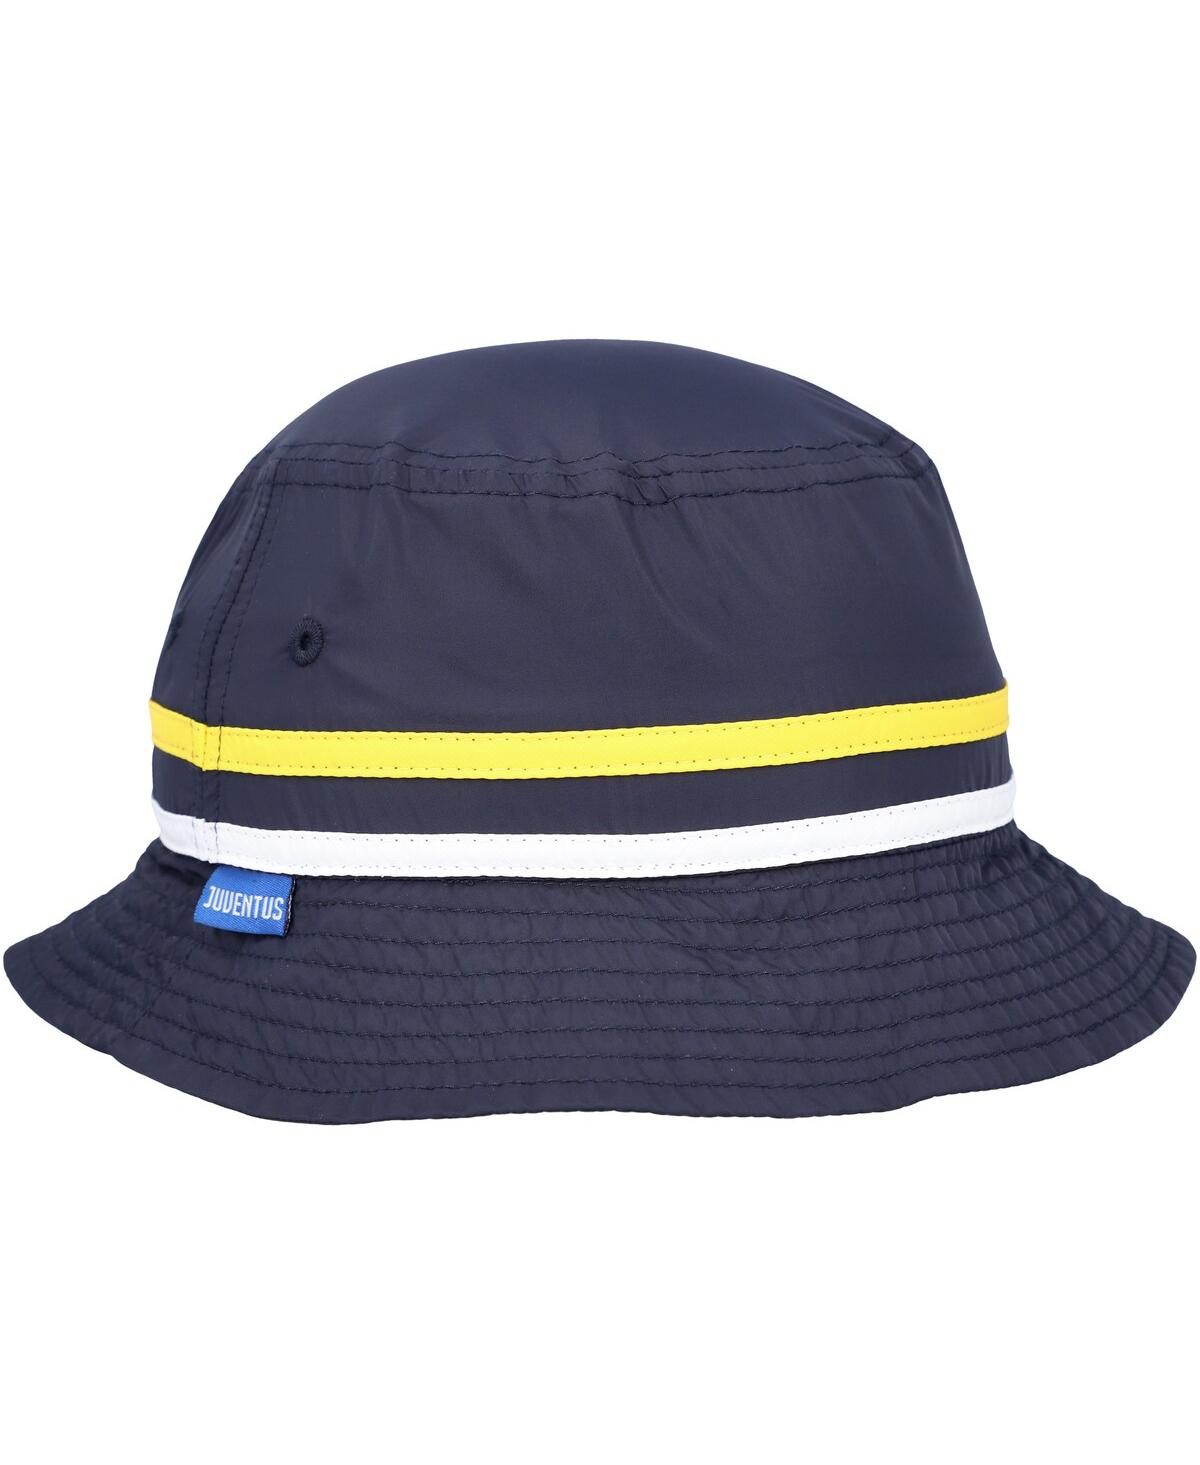 Men's Navy Juventus Oasis Bucket Hat - Navy